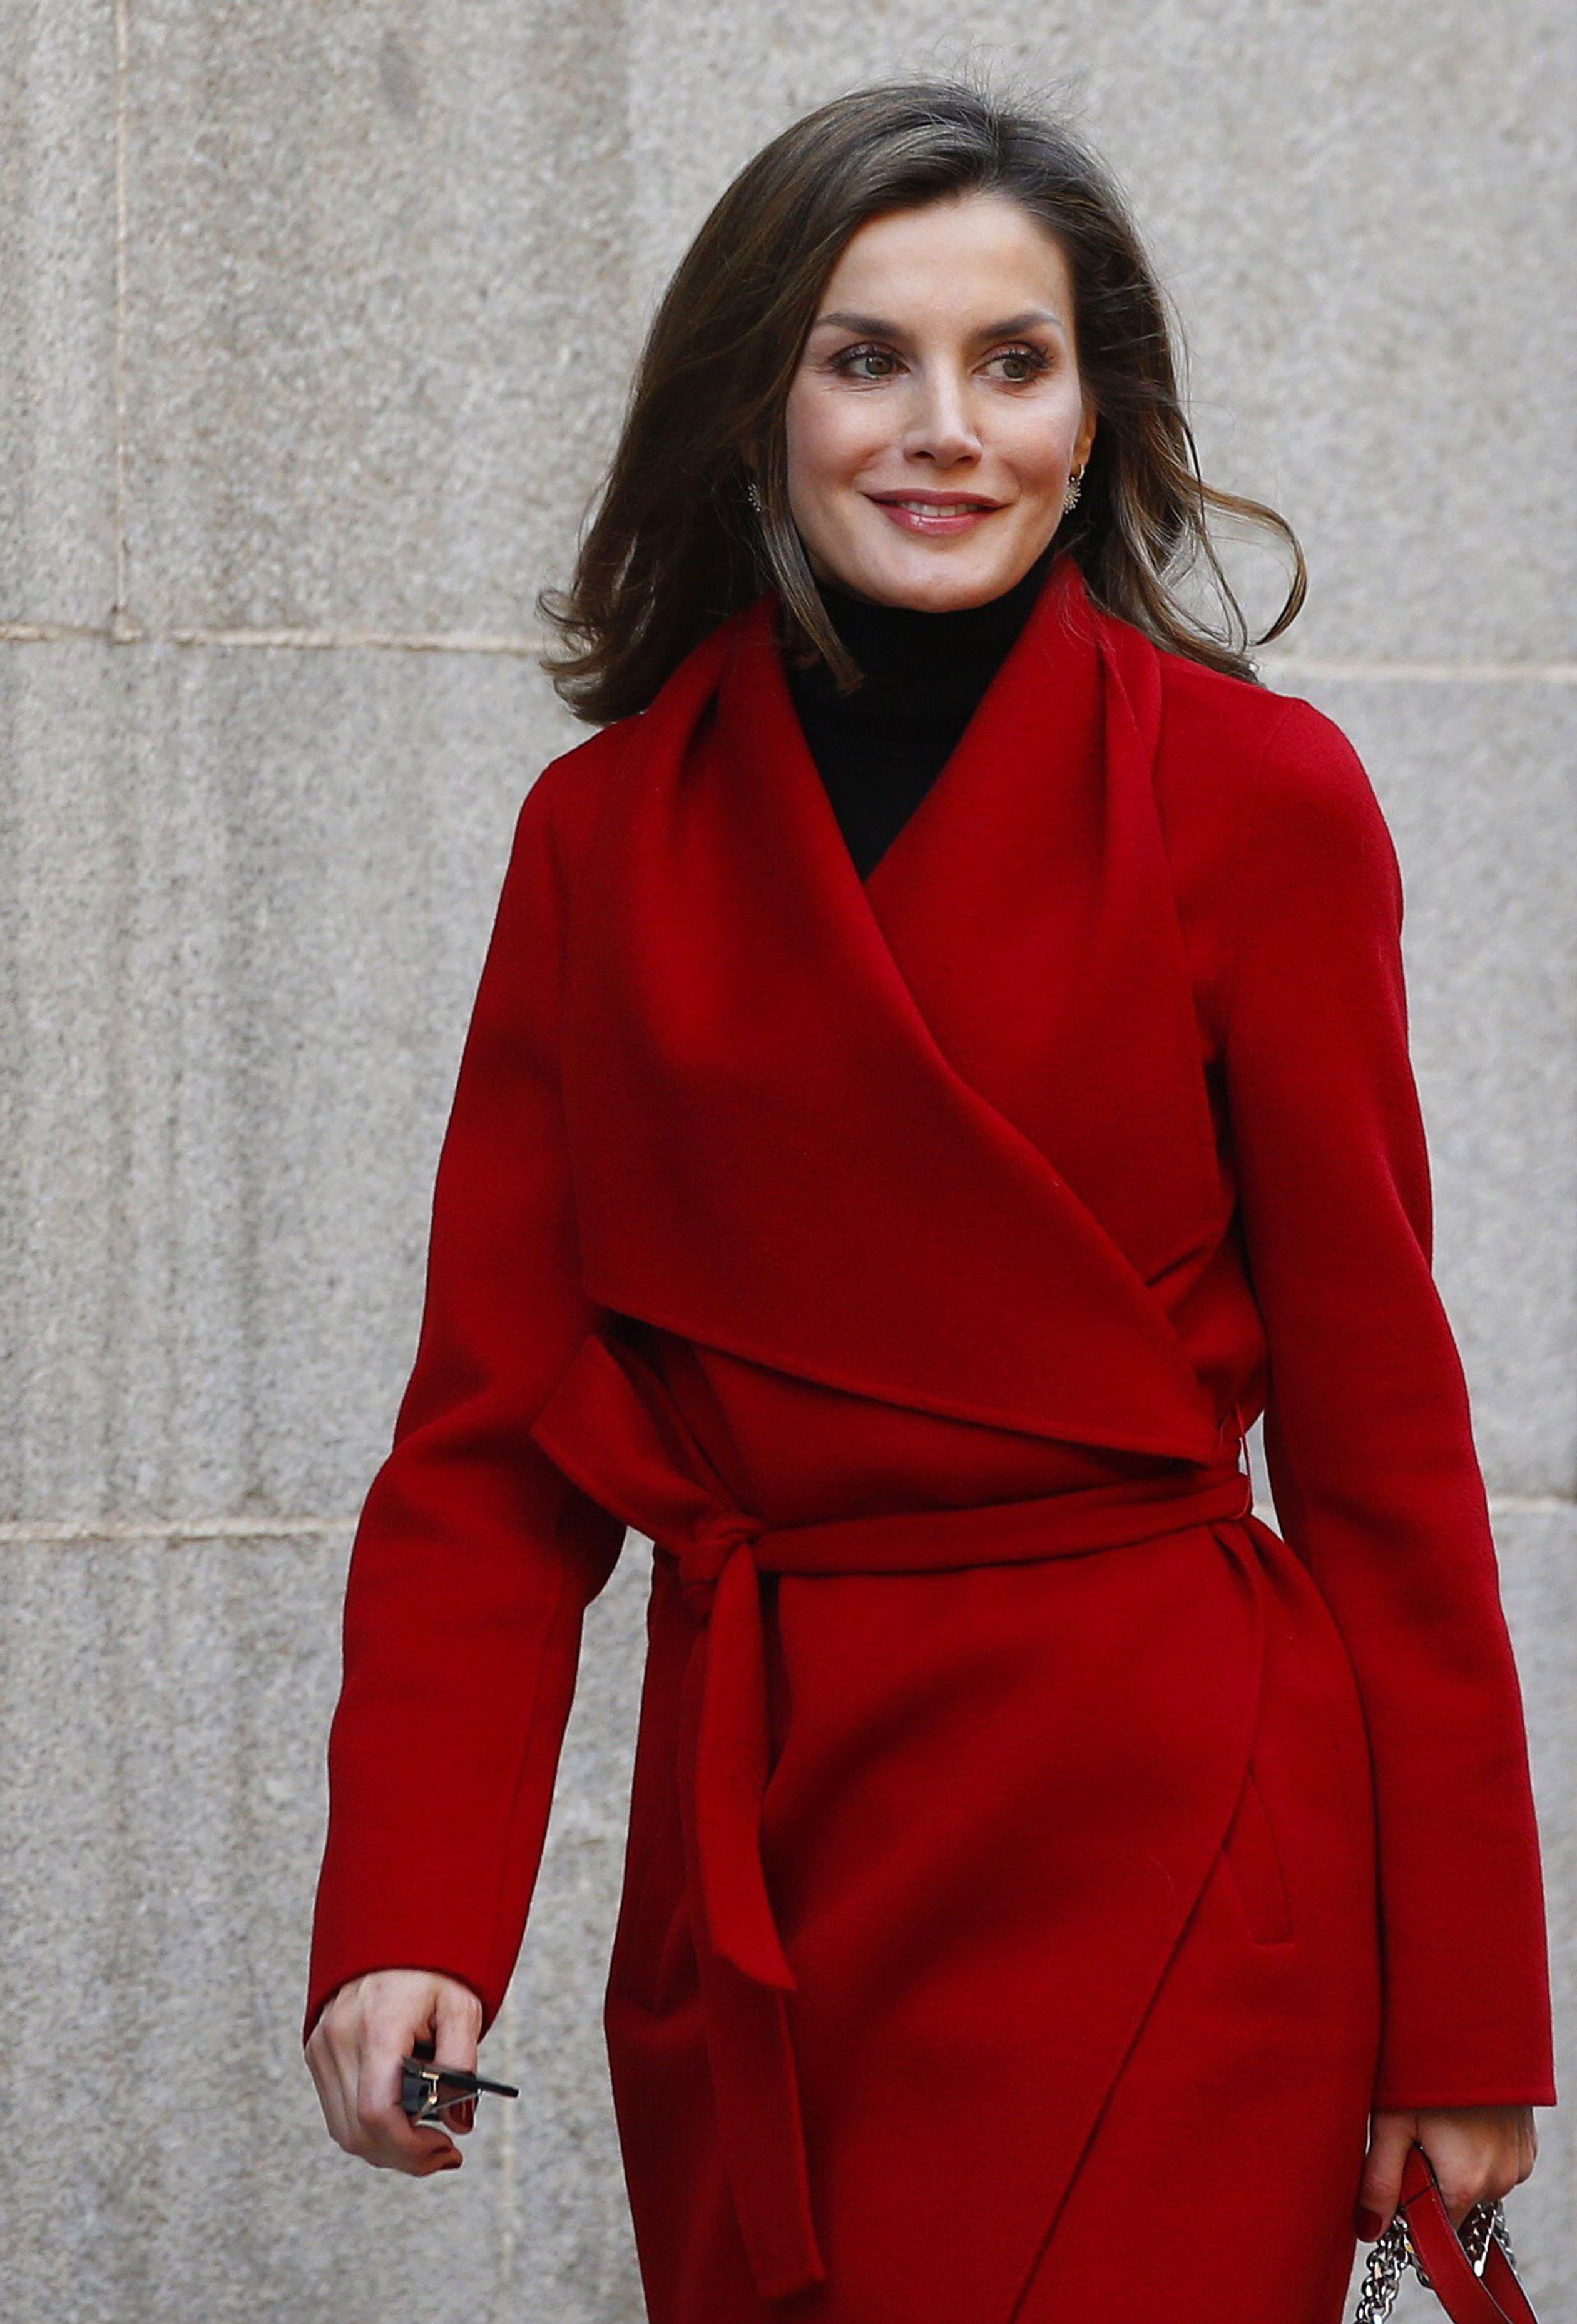 Koningin Letizia van Spanje spotten we geregeld in de kleur rood. Ze heeft heel wat rode outfits: